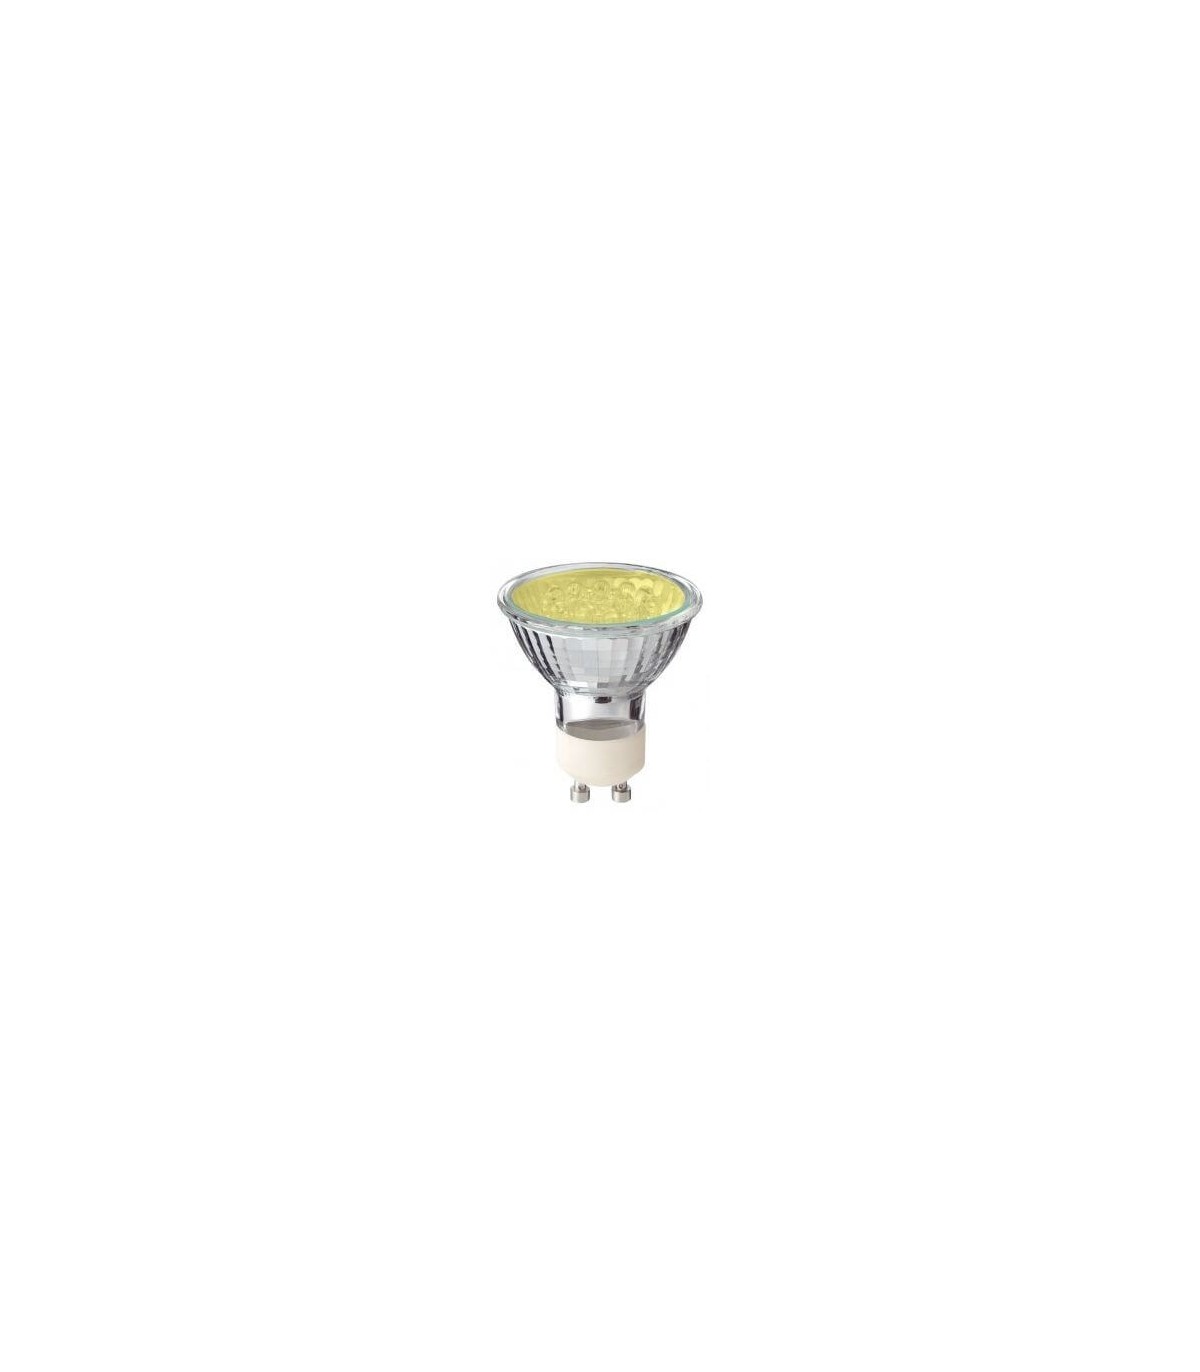 Ampoule LEDspot PHILIPS PAR16 4W substitut 35W 272 lumens blanc chaud 2700K  dimmable GU10